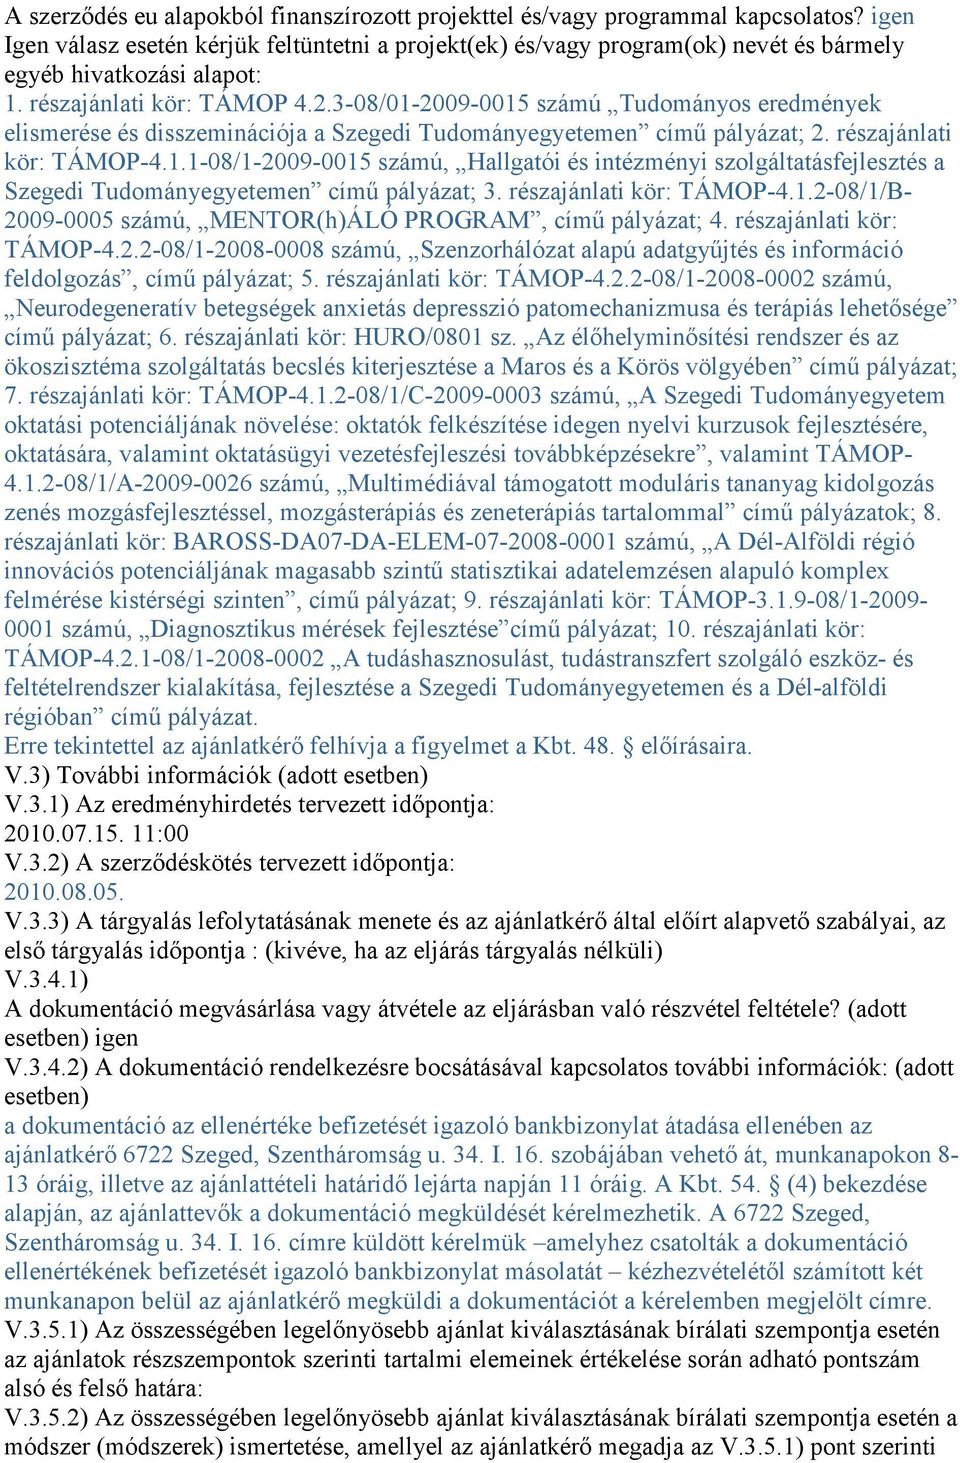 3-08/01-2009-0015 számú Tudományos eredmények elismerése és disszeminációja a Szegedi Tudományegyetemen címő pályázat; 2. részajánlati kör: TÁMOP-4.1.1-08/1-2009-0015 számú, Hallgatói és intézményi szolgáltatásfejlesztés a Szegedi Tudományegyetemen címő pályázat; 3.